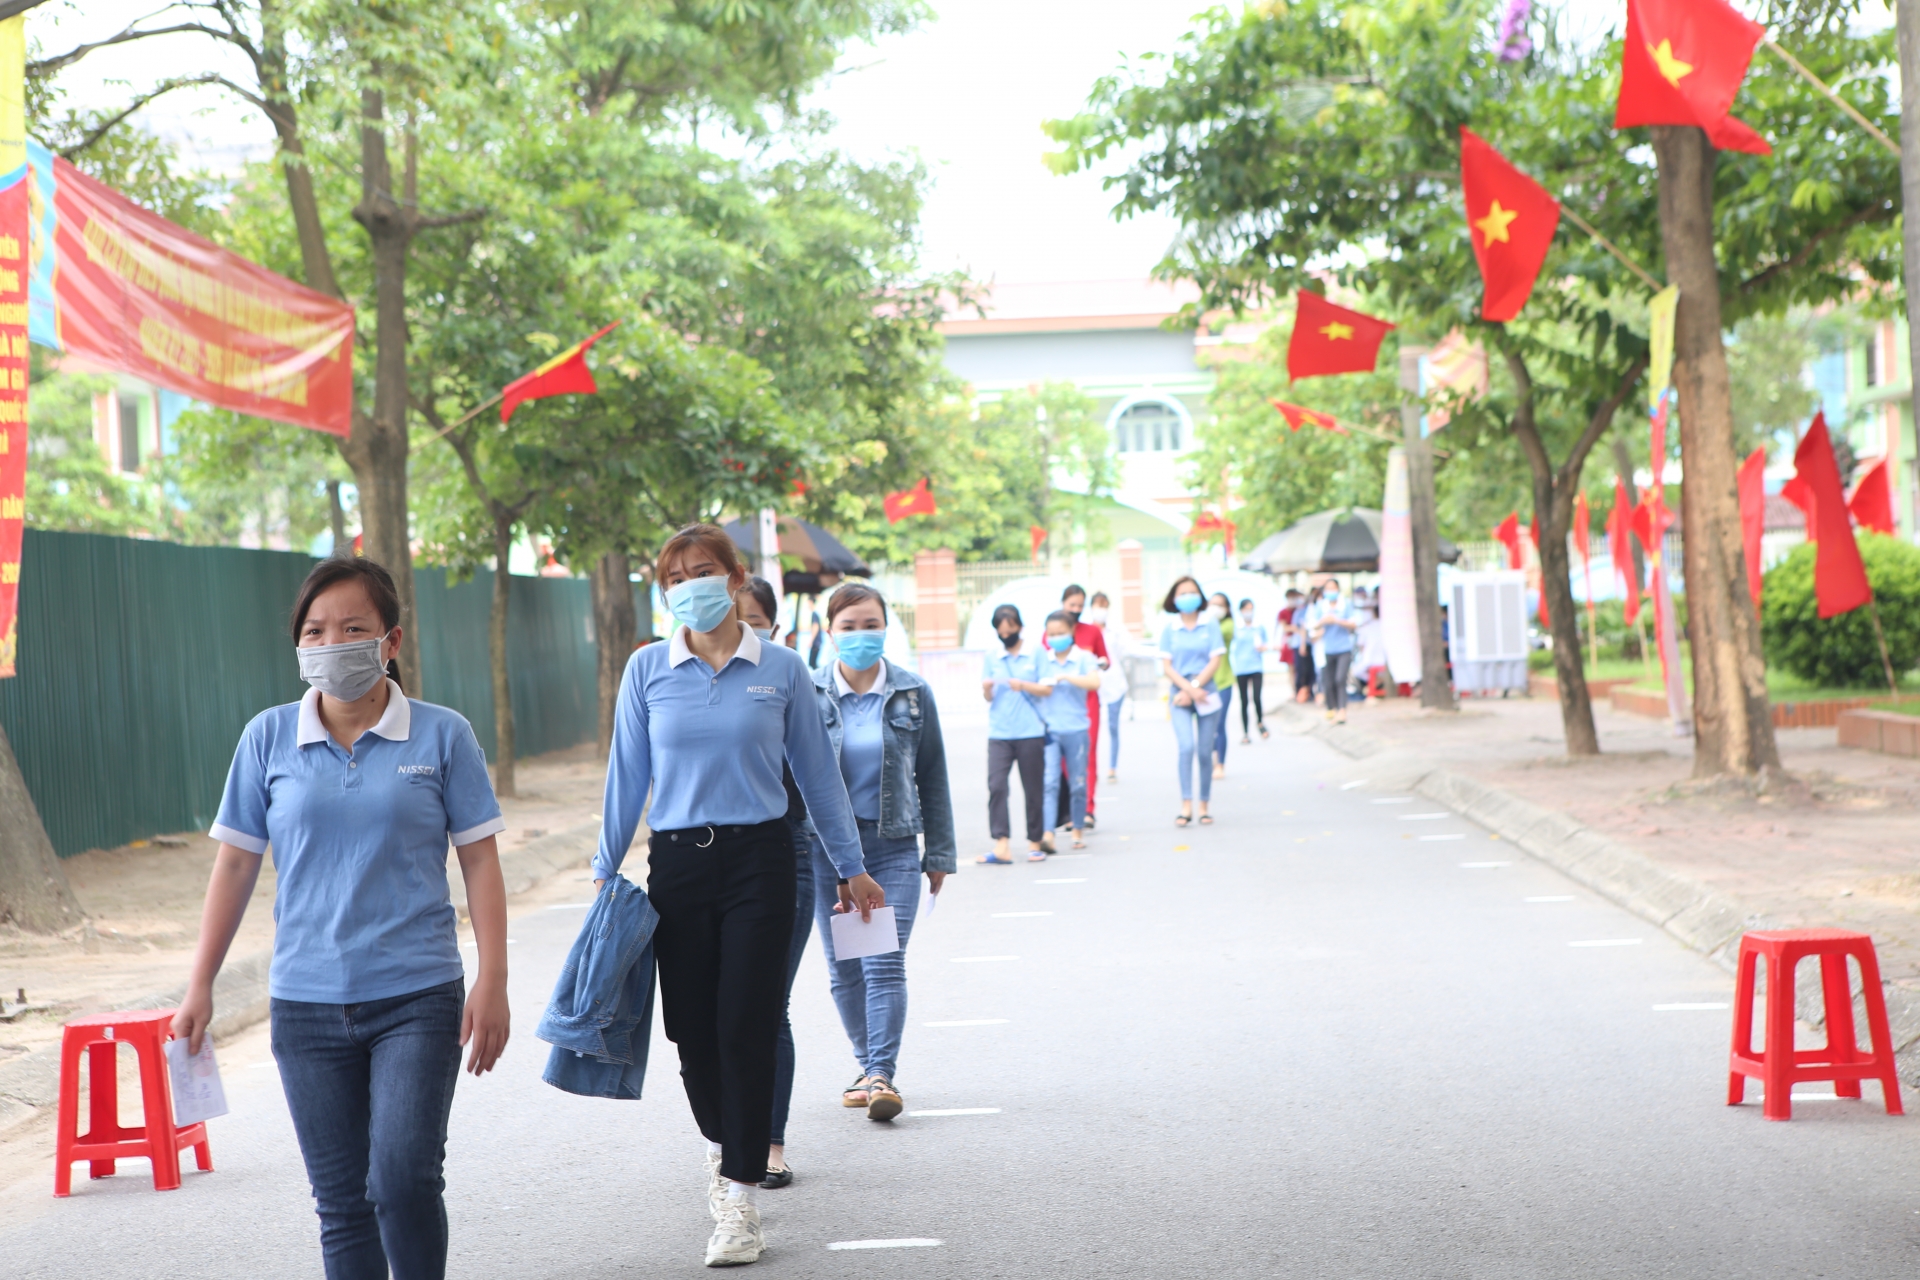 Công nhân các khu công nghiệp Hà Nội: Mong đại biểu quan tâm đến người lao động